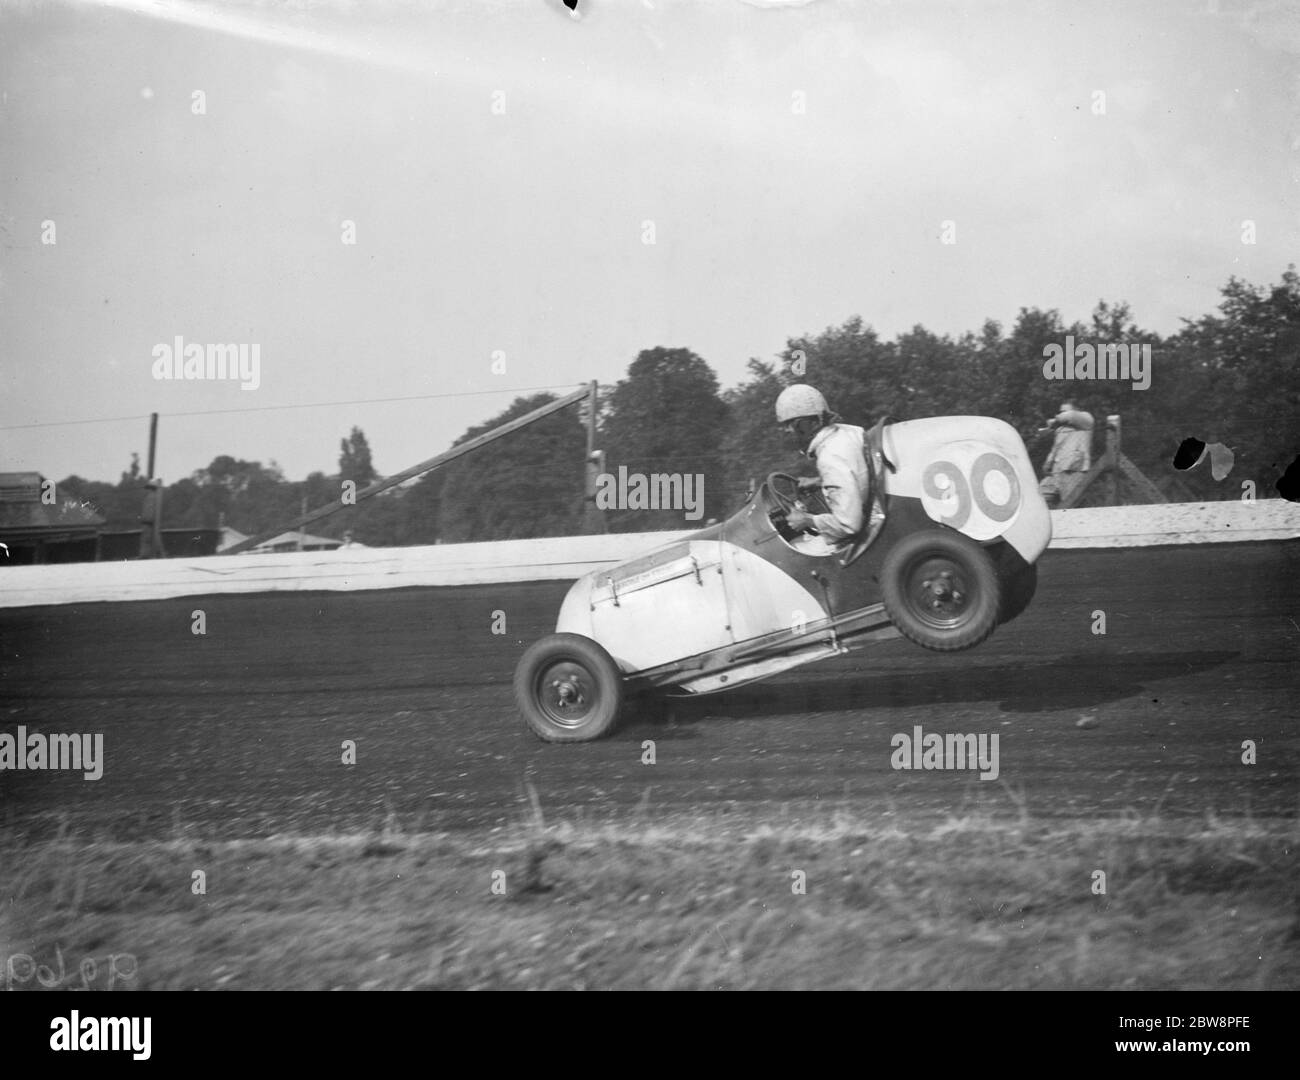 Der Crystal Palace Miniatur Autorennen Grand prix . Frank Chiswell hebt das Heck seines Rennwagens. 1938 Stockfoto